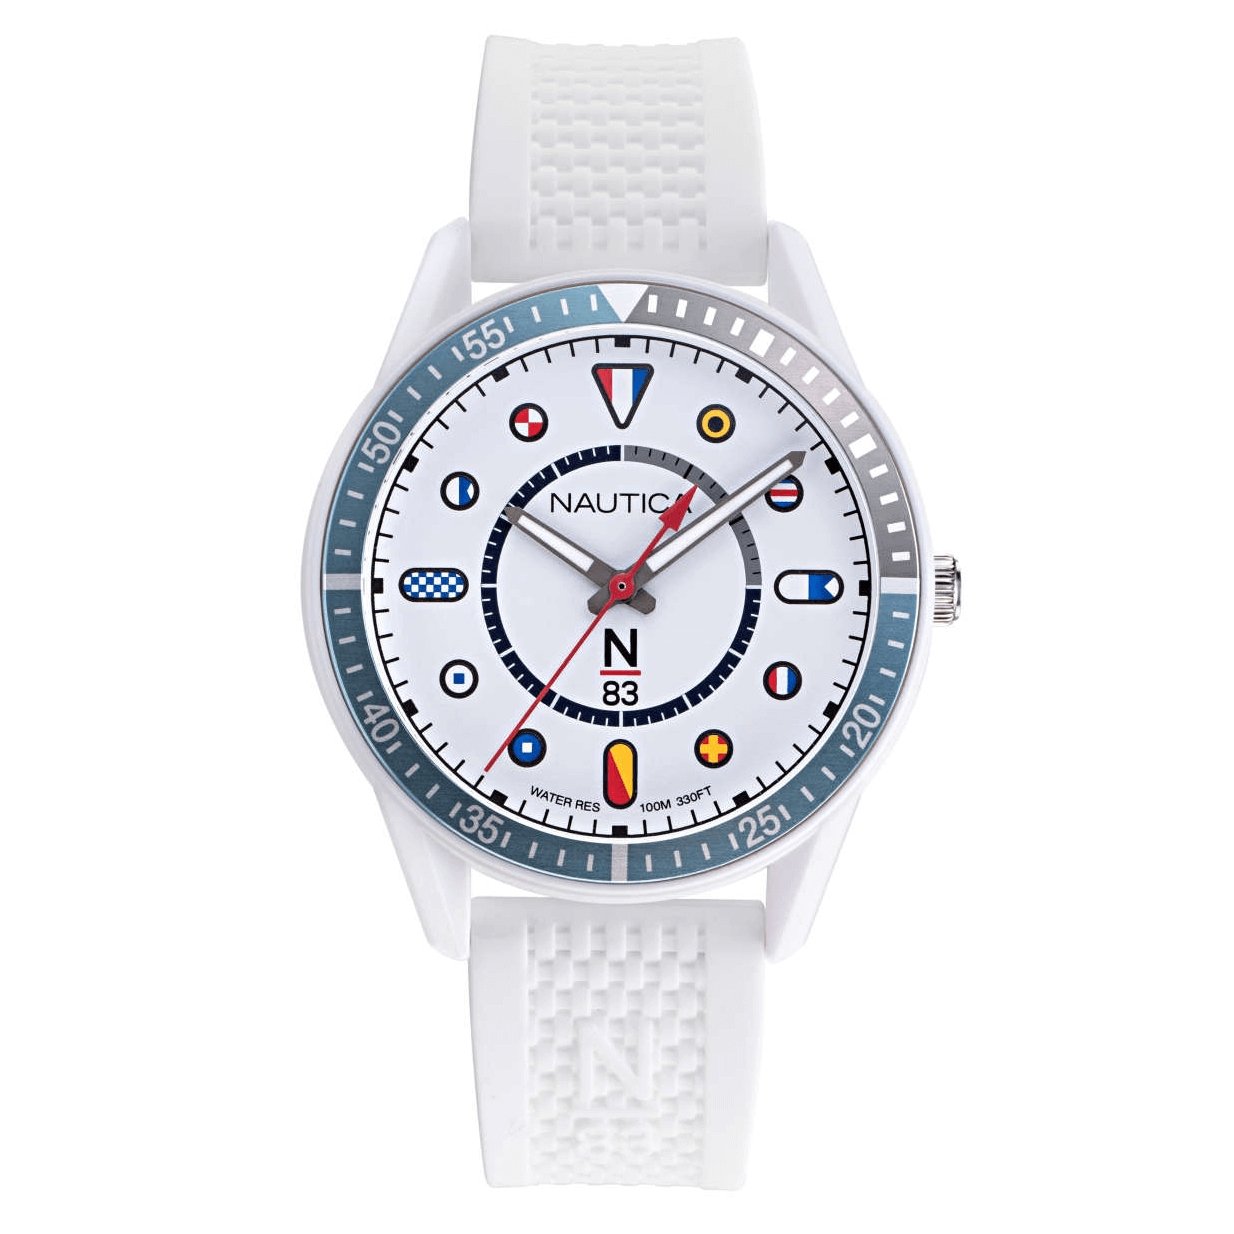 Nautica Men's Watch N-83 Surf Park White NAPSPVC02 - Watches & Crystals